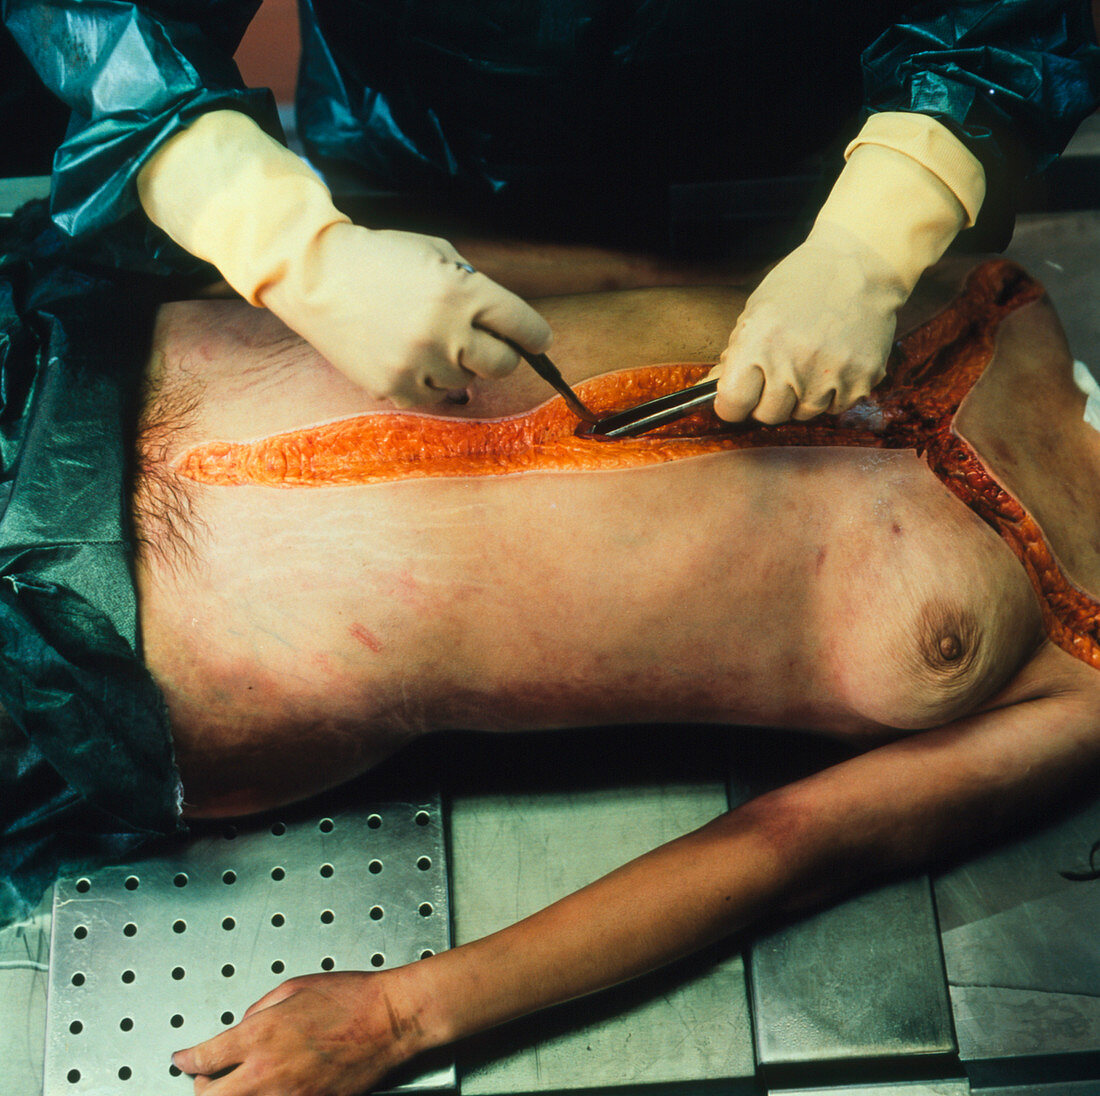 Autopsy examination